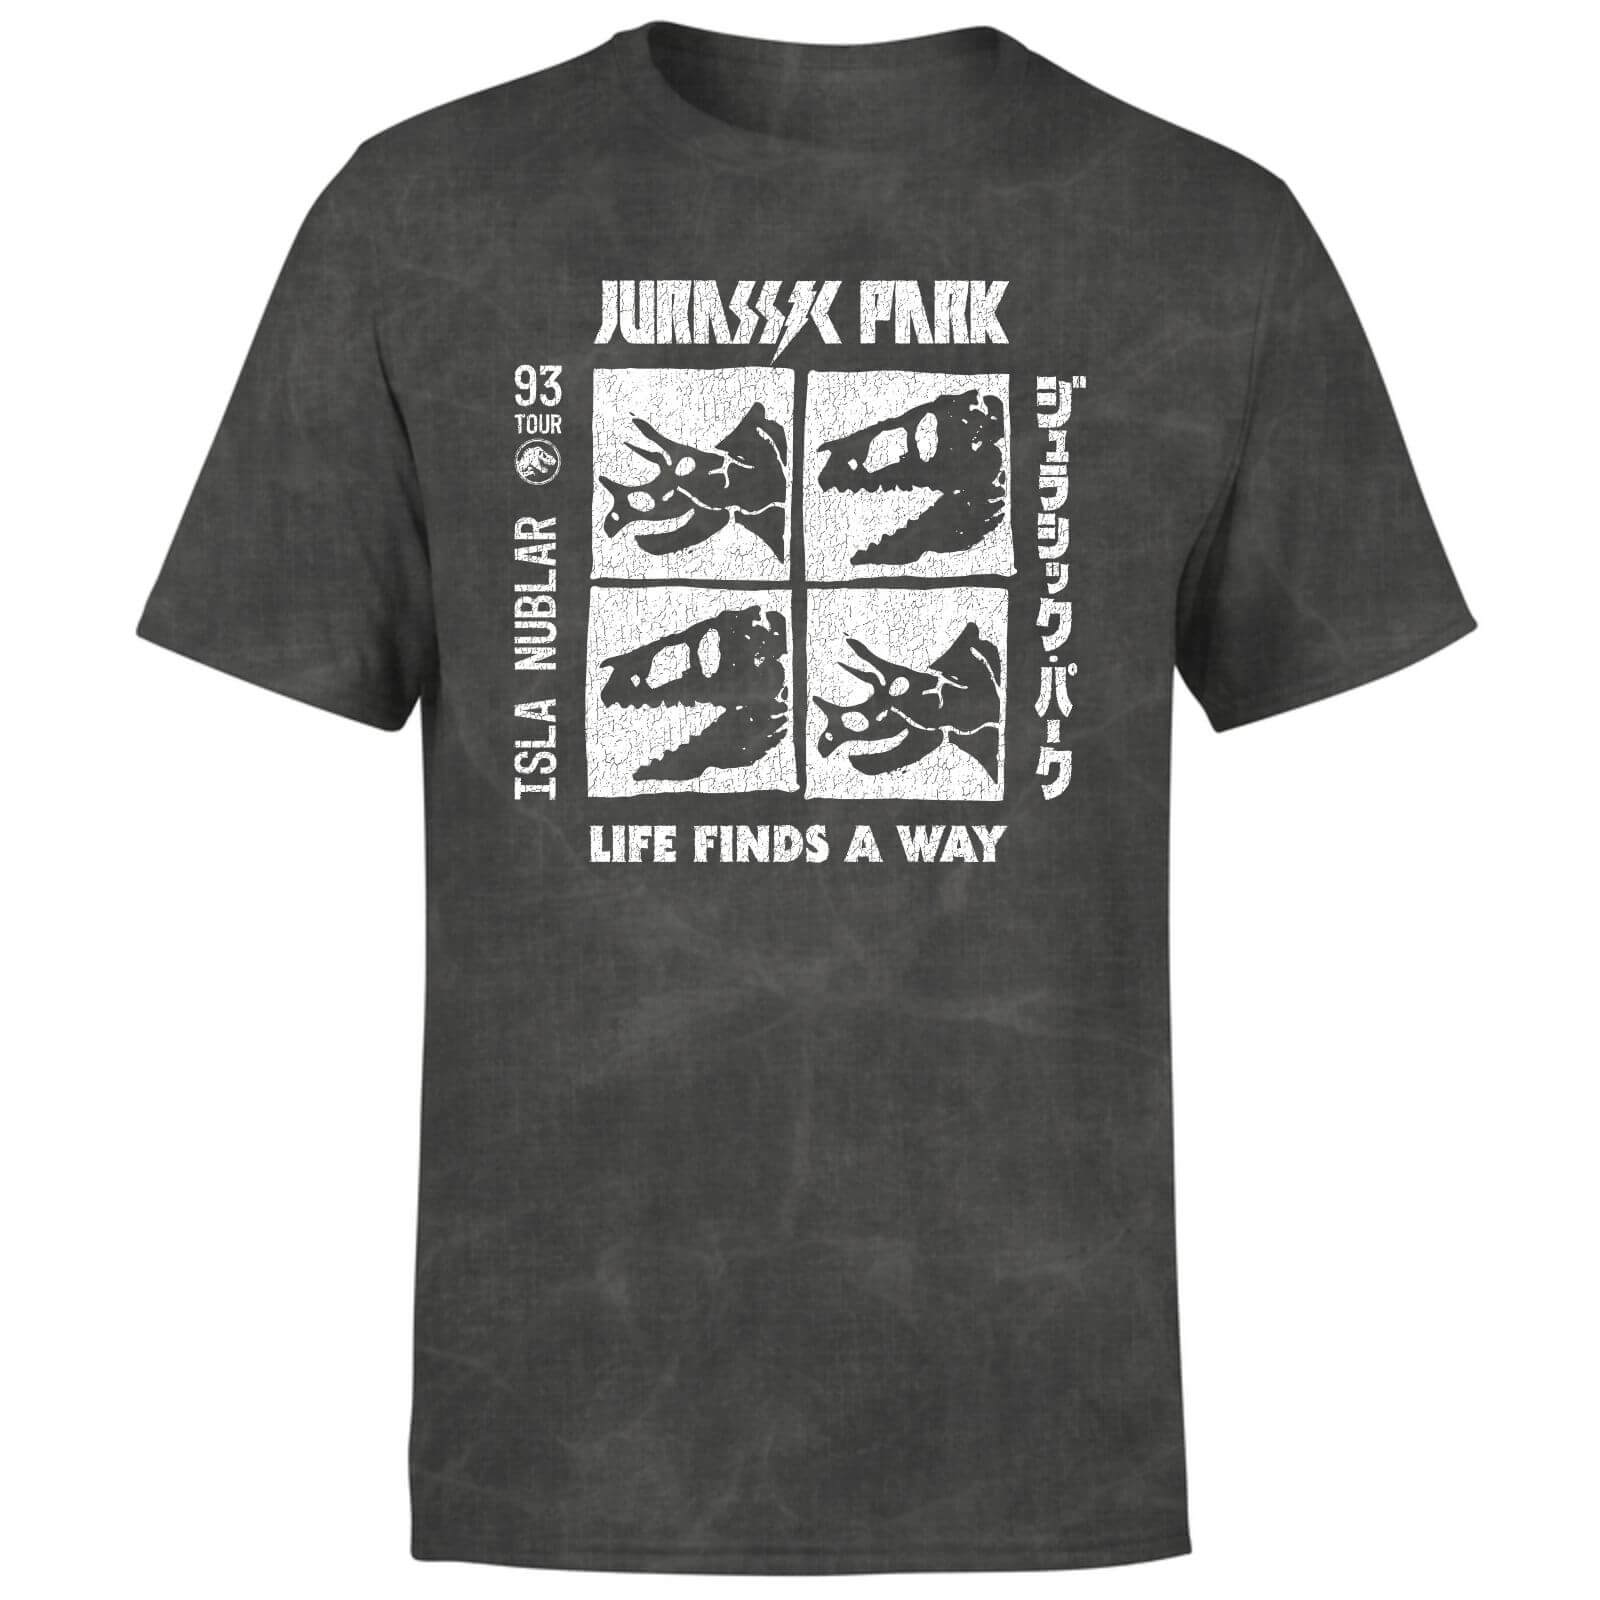 Jurassic Park The Faces Unisex T-Shirt - Black Acid Wash - S